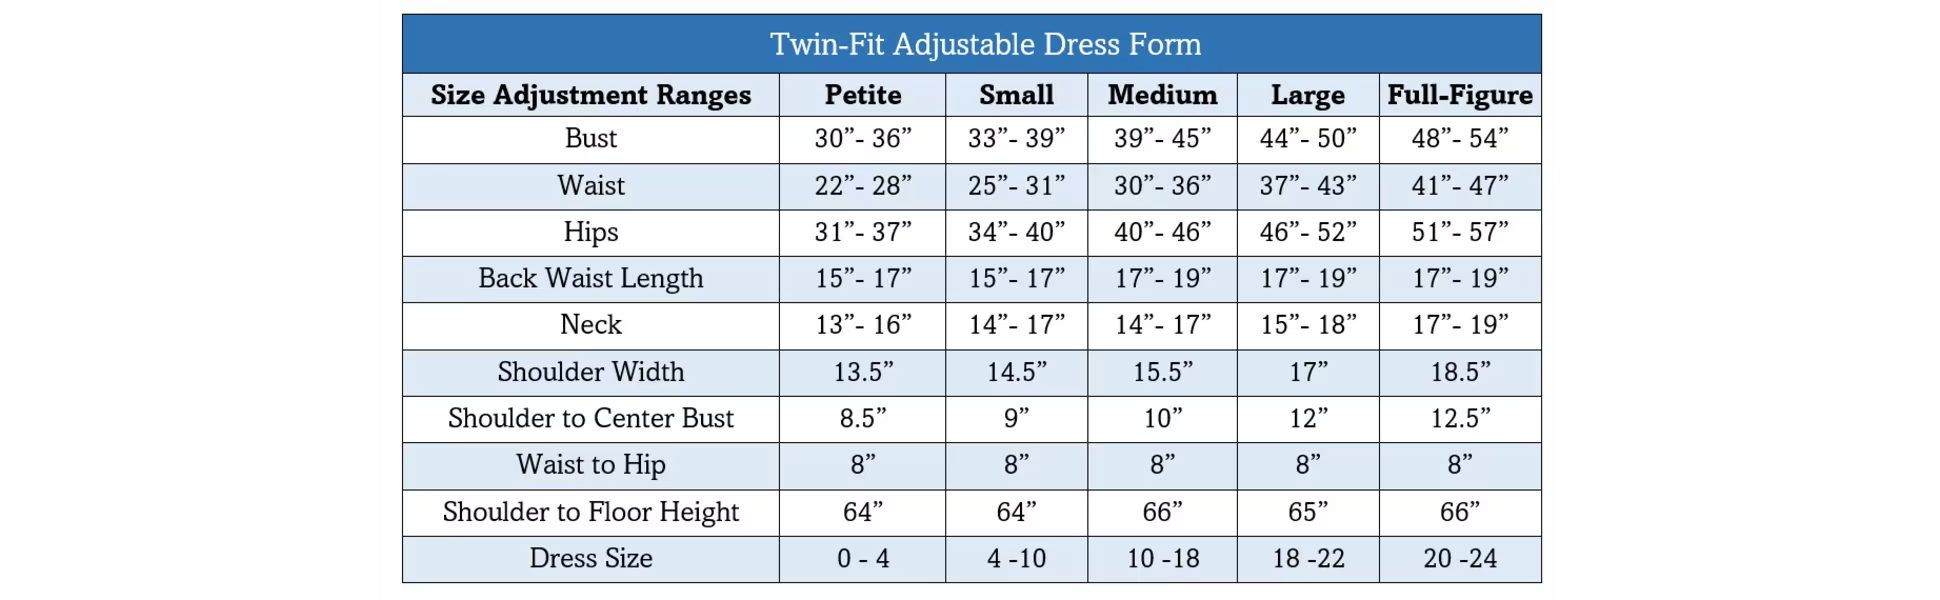 Dritz "Twin-Fit" Dress Form